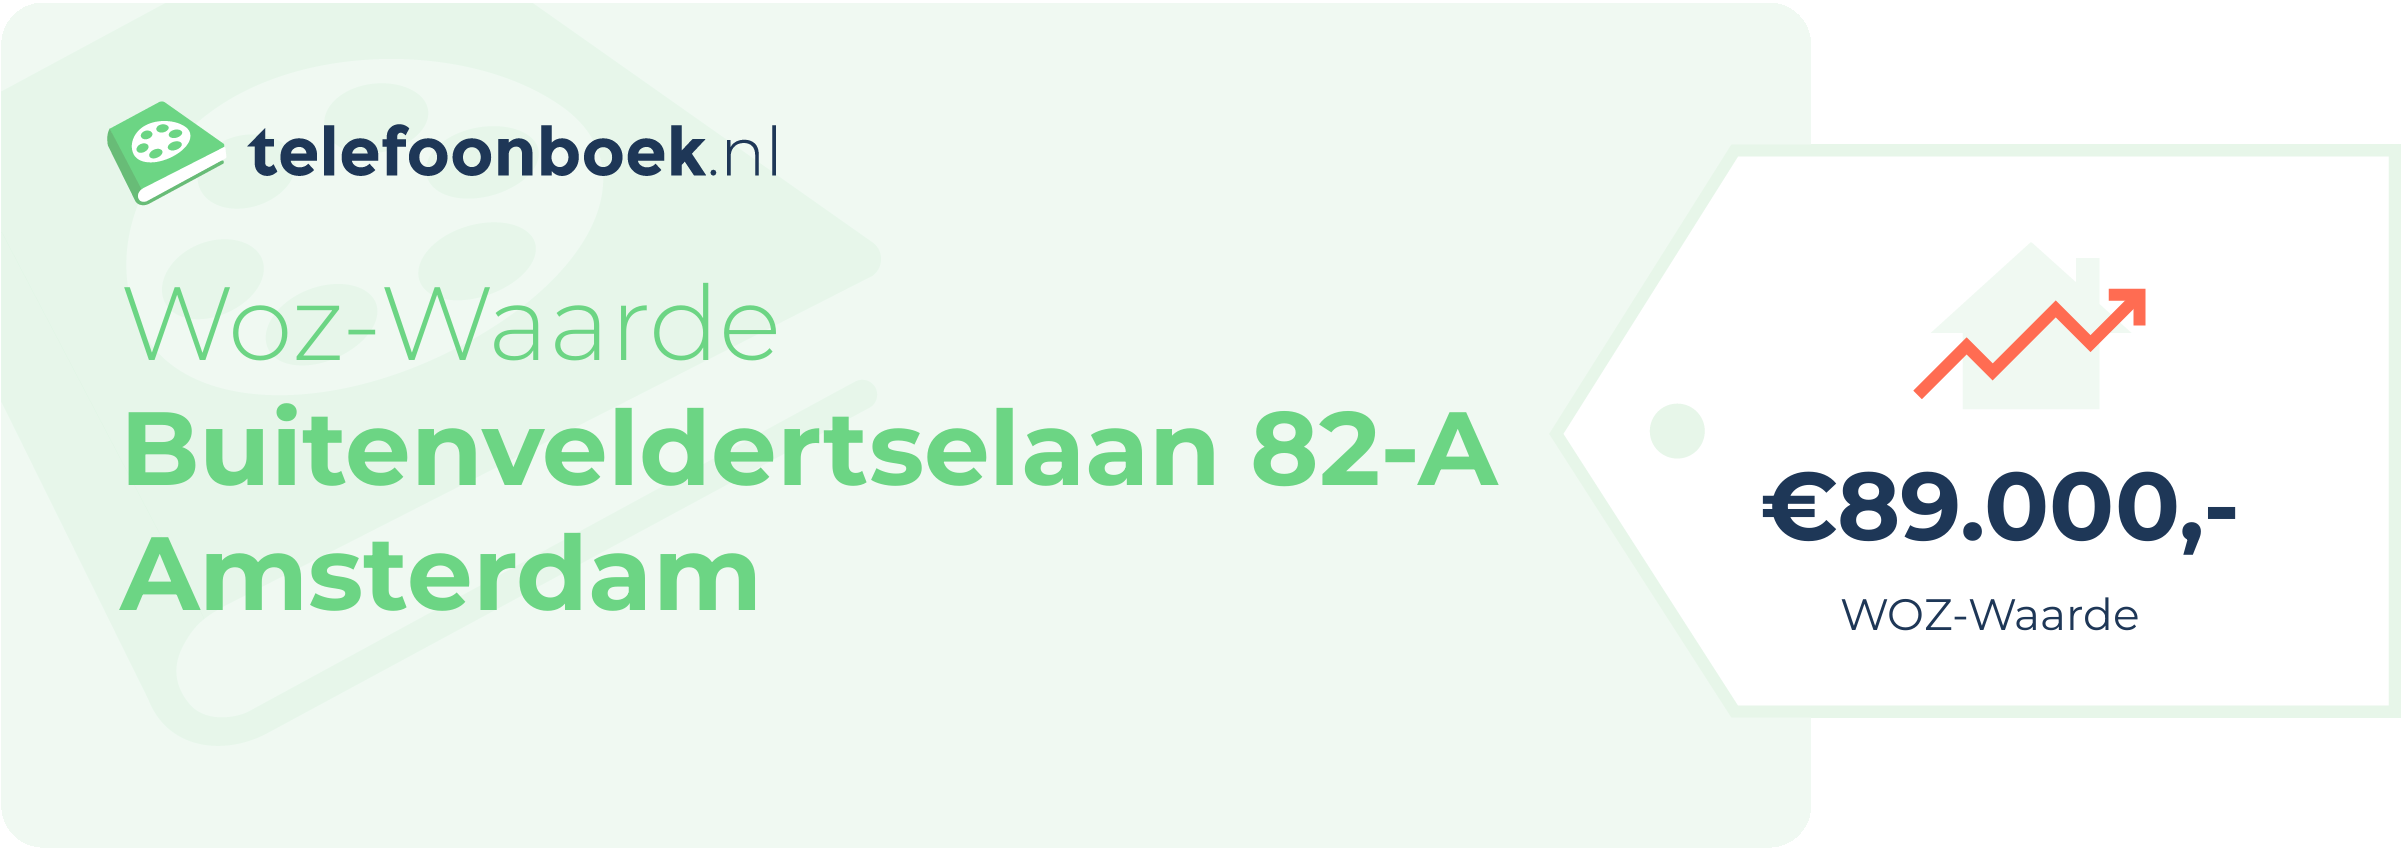 WOZ-waarde Buitenveldertselaan 82-A Amsterdam